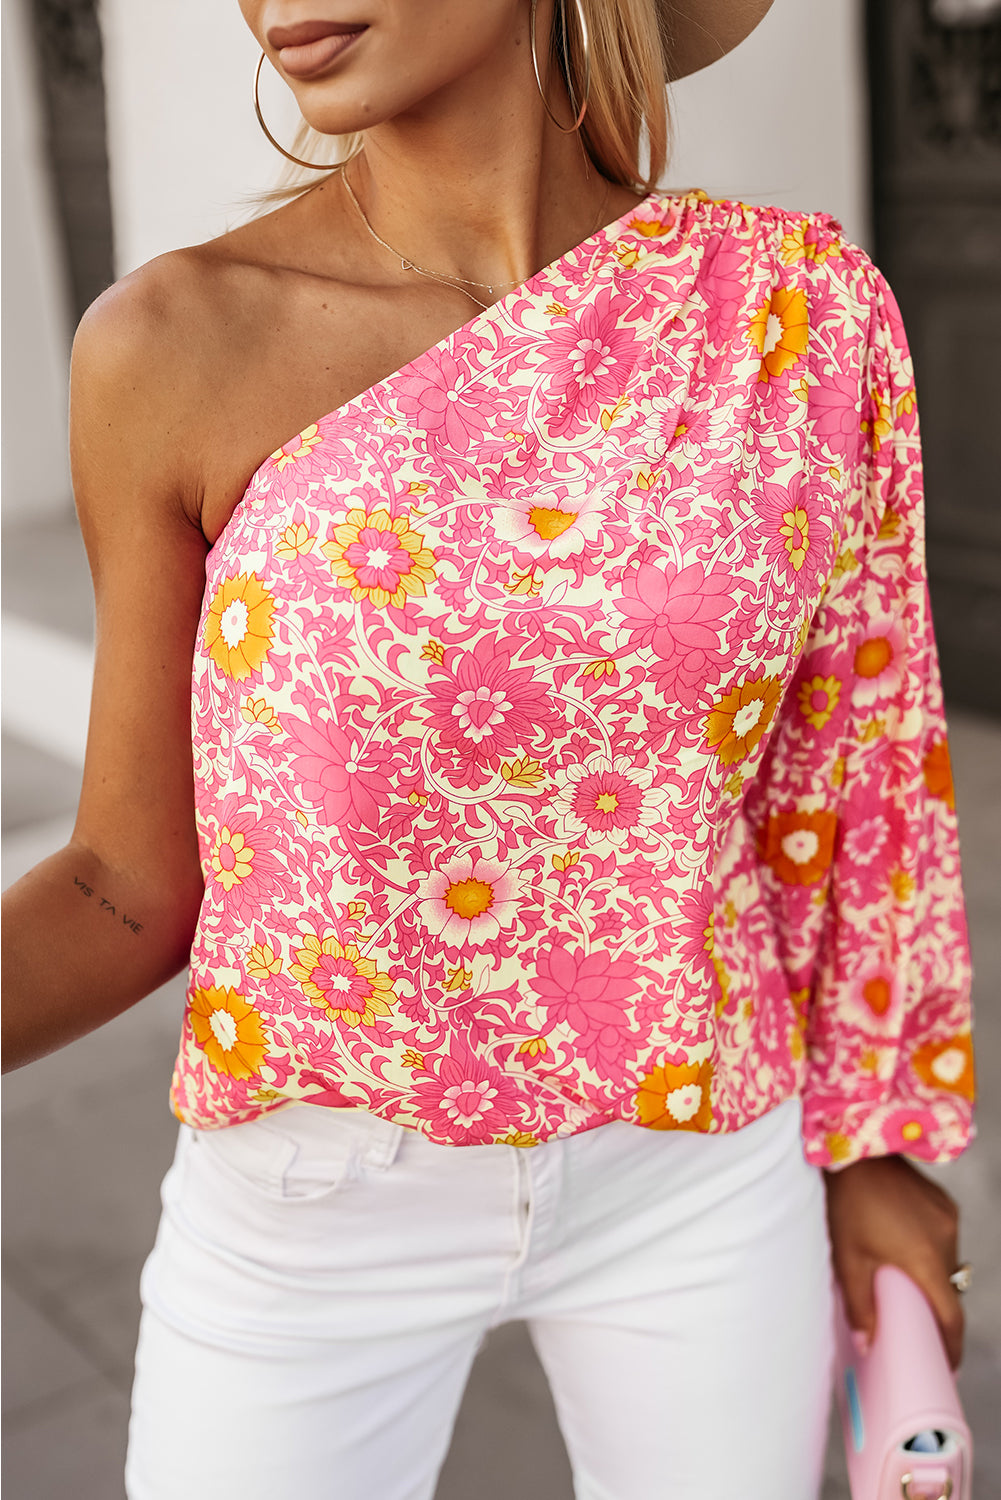 Rožnata bluza s cvetličnimi rokavi na eno ramo in naborke